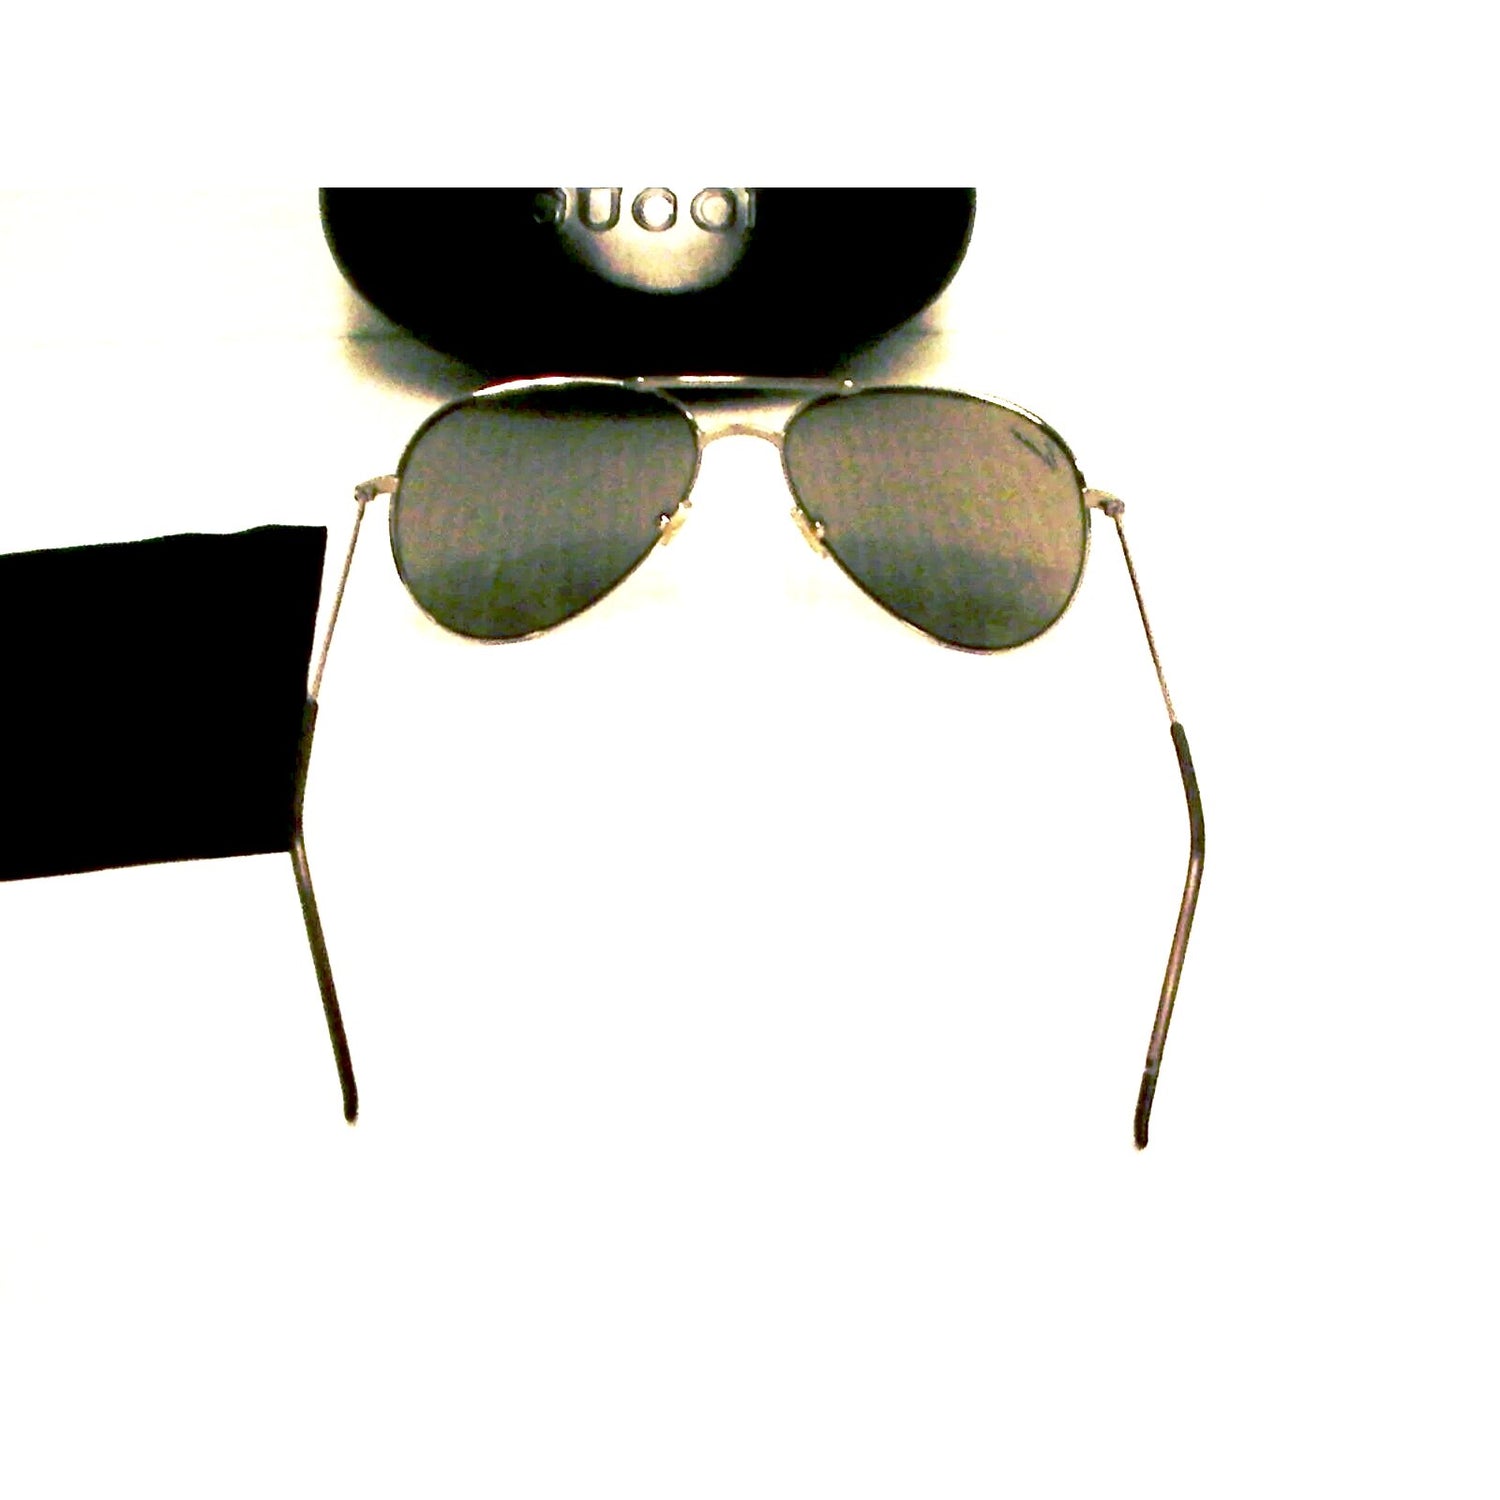 Gucci New sunglasses gg 1287/s half mirror silver frame gray lenses authentic